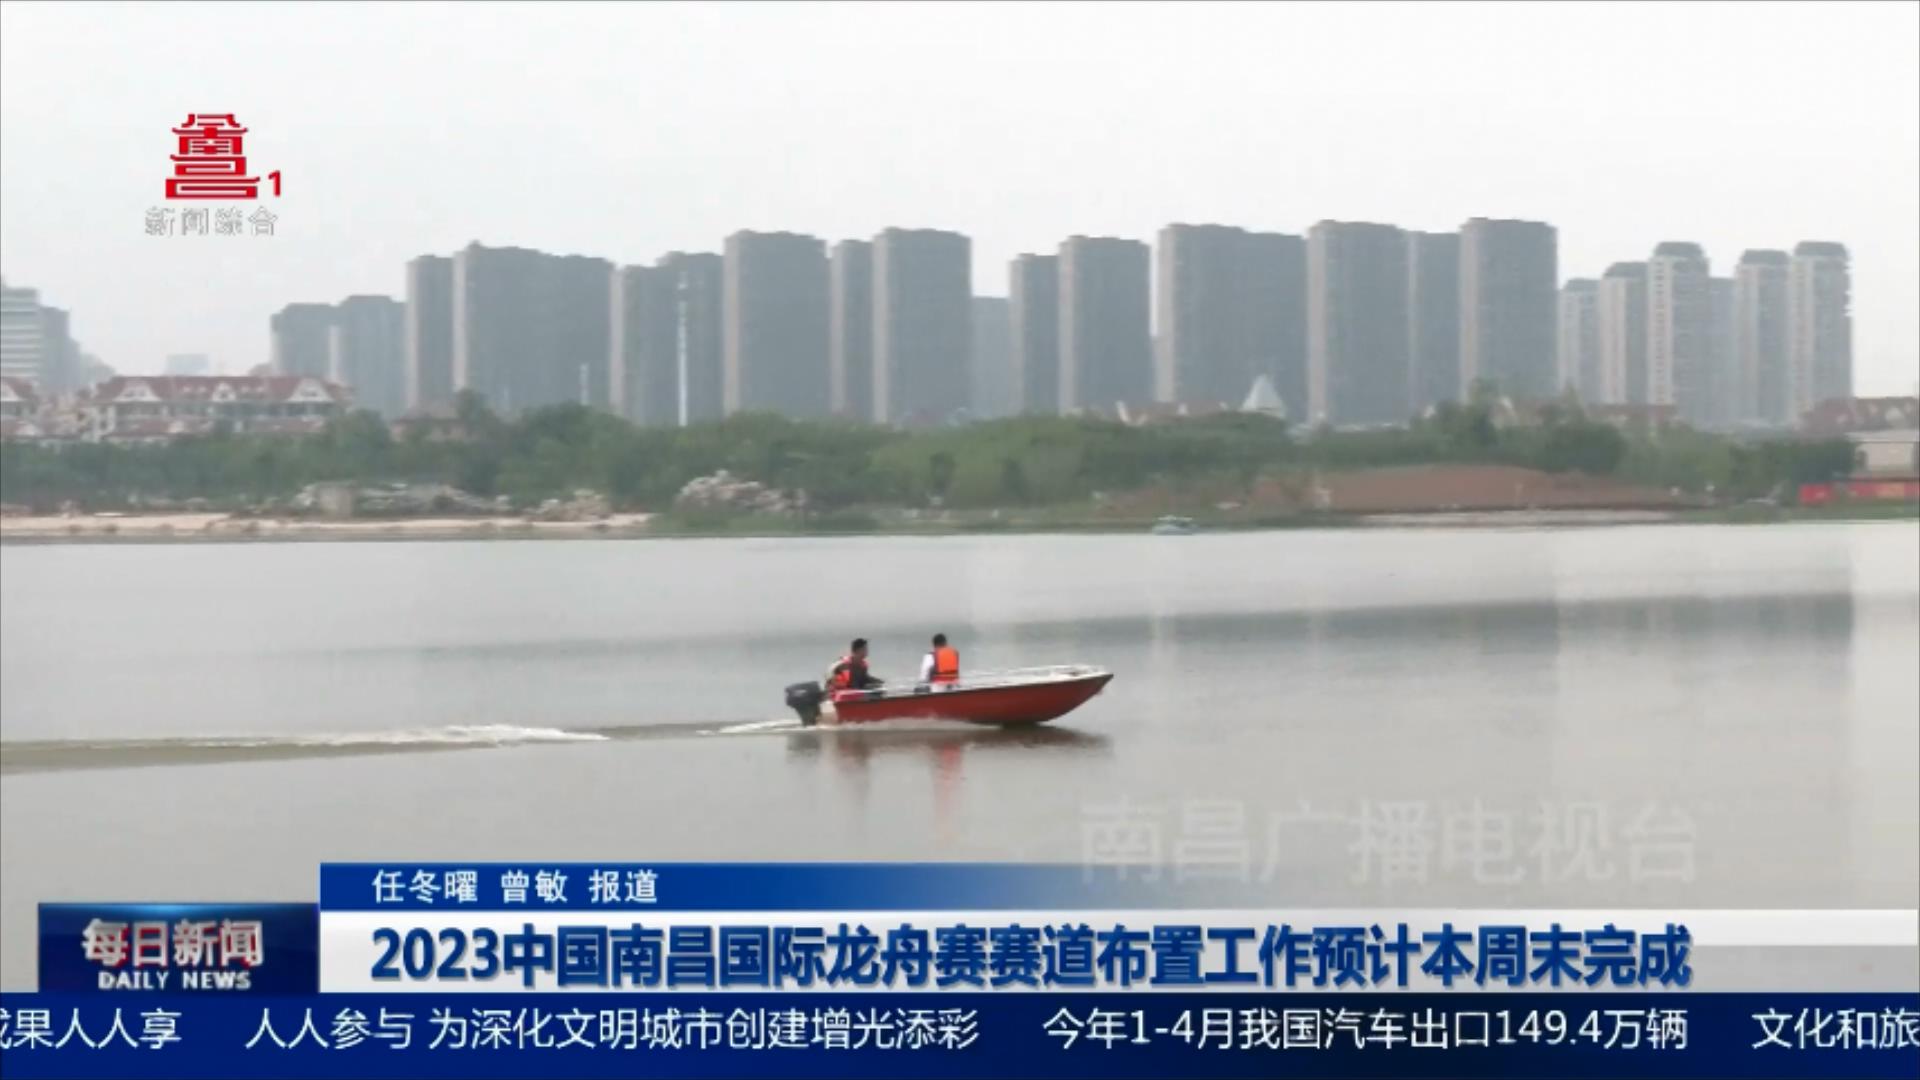 2023中国南昌国际龙舟赛赛道布置工作预计本周末完成